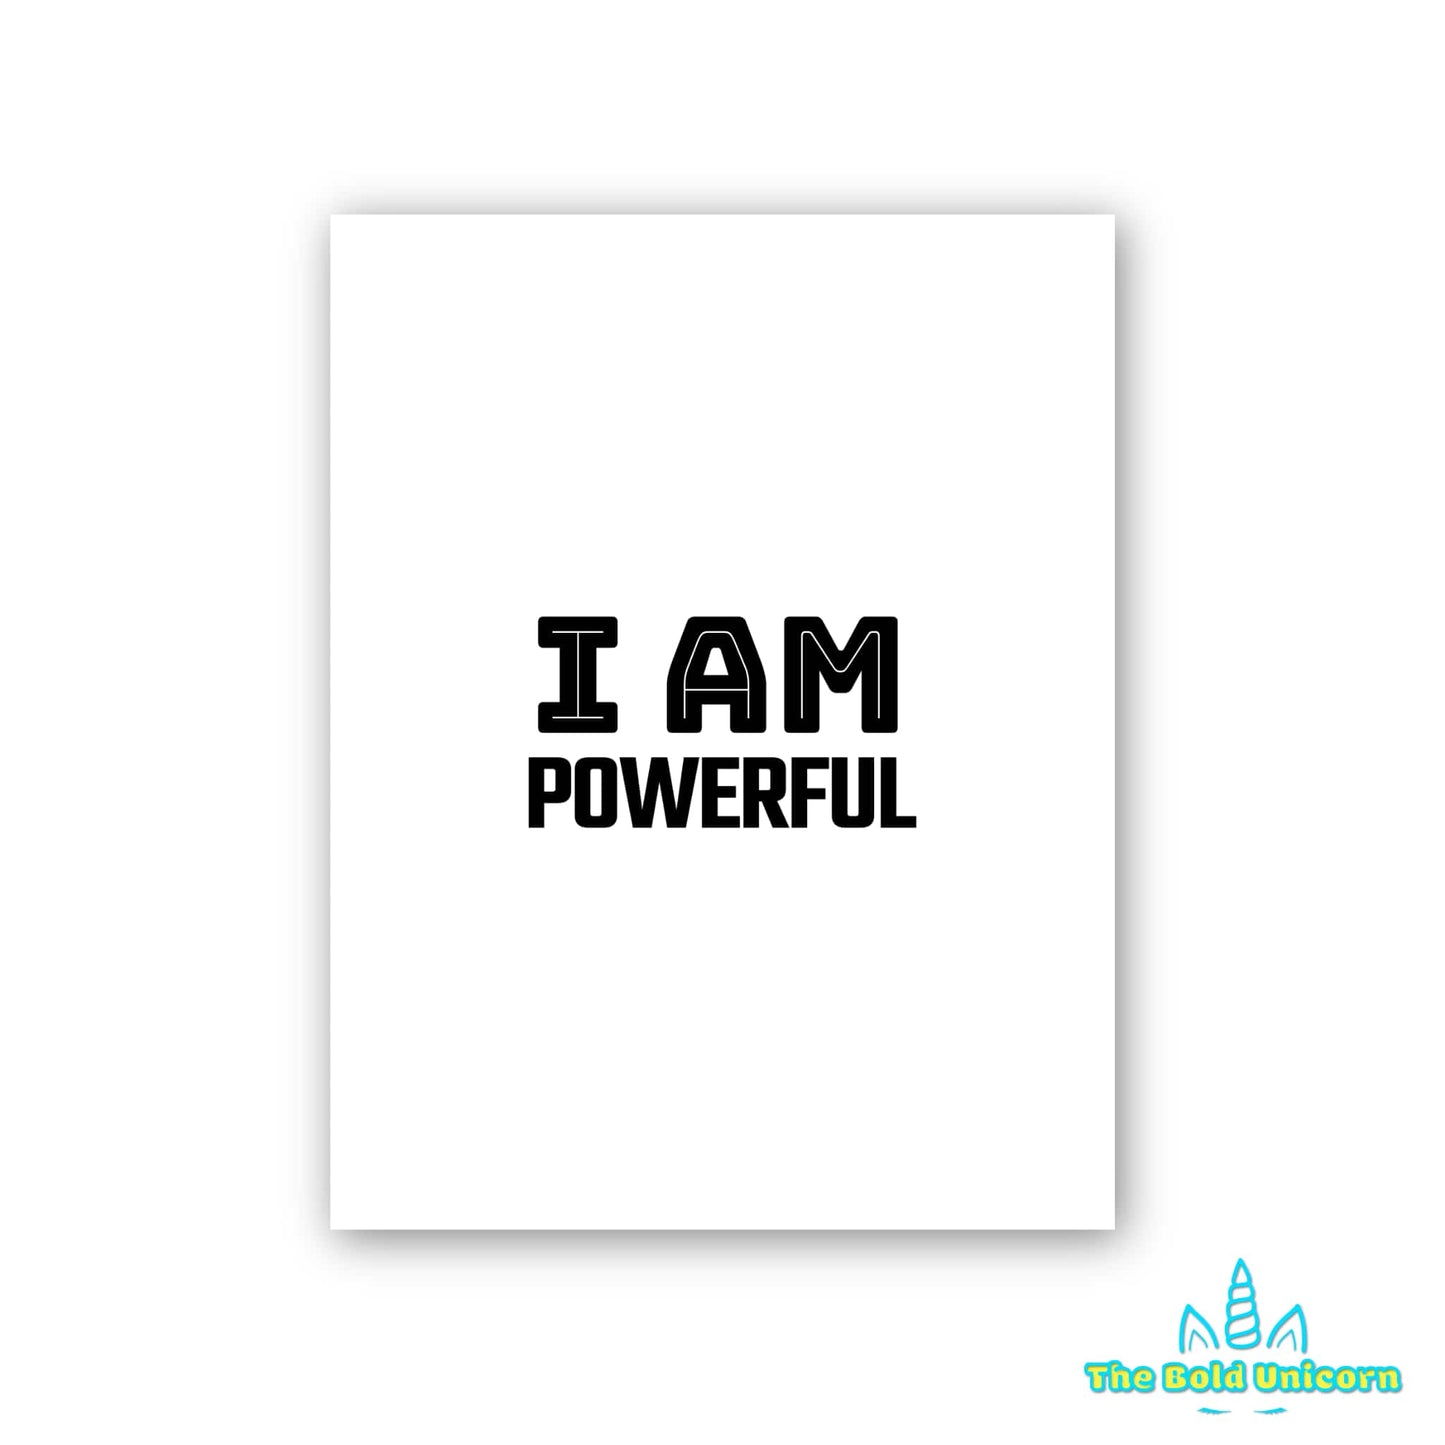 I AM POWERFUL